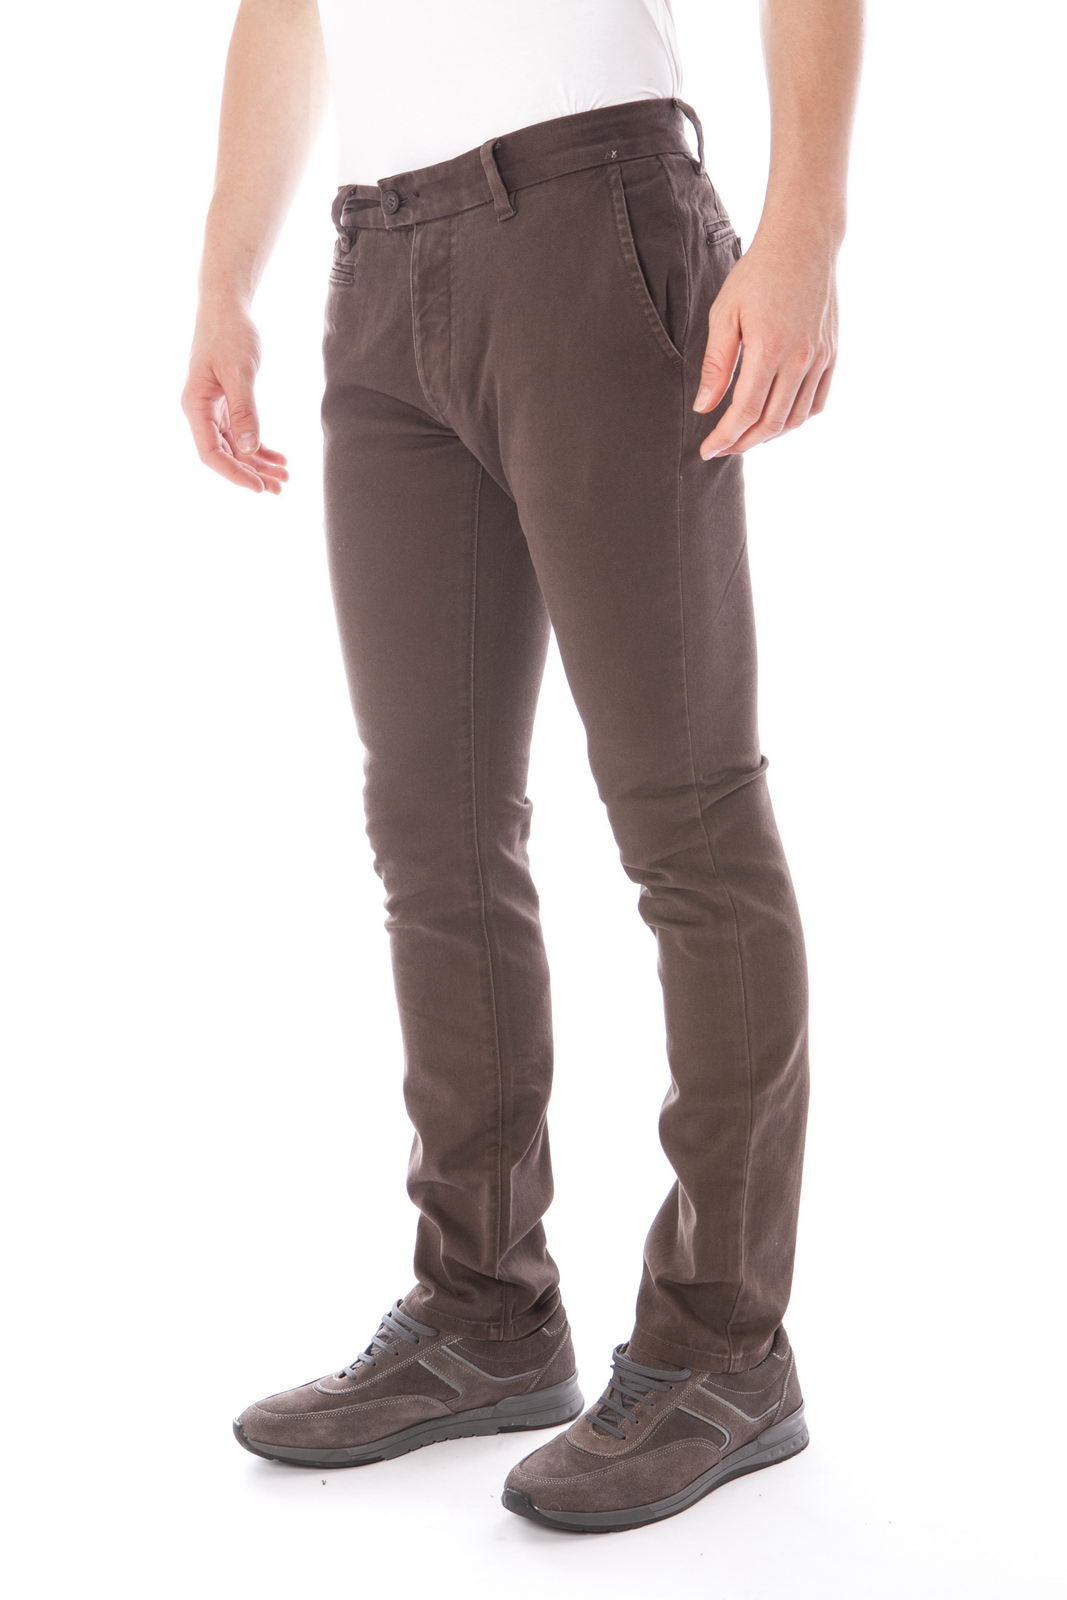 Pantaloni Armani Jeans Marrone M - Cotone Elastan - mem39